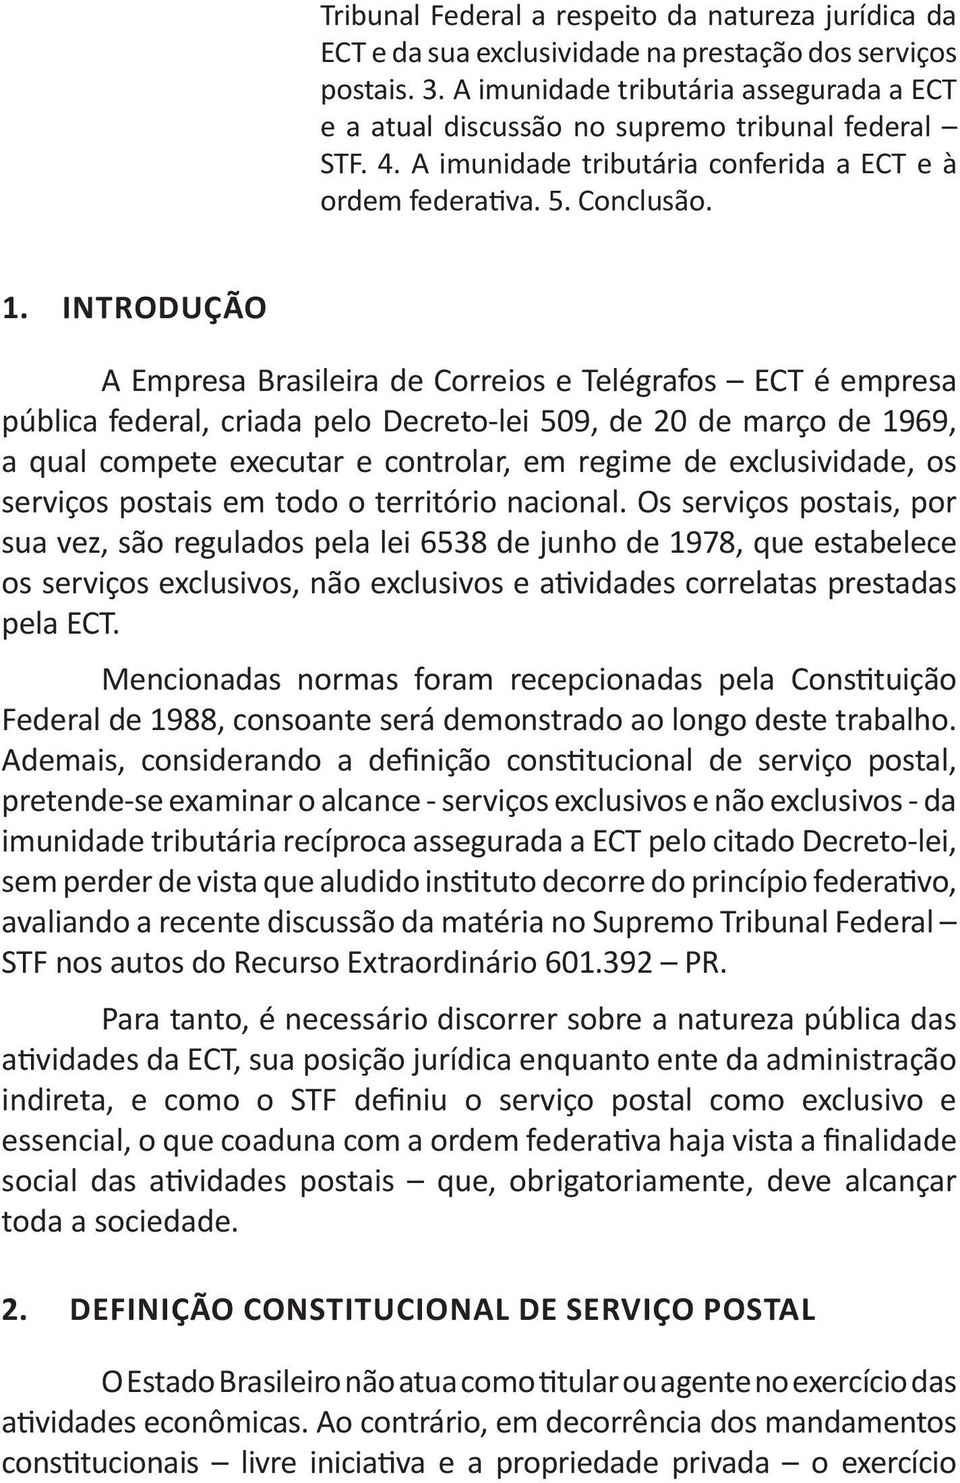 INTRODUÇÃO A Empresa Brasileira de Correios e Telégrafos ECT é empresa pública federal, criada pelo Decreto-lei 509, de 20 de março de 1969, a qual compete executar e controlar, em regime de